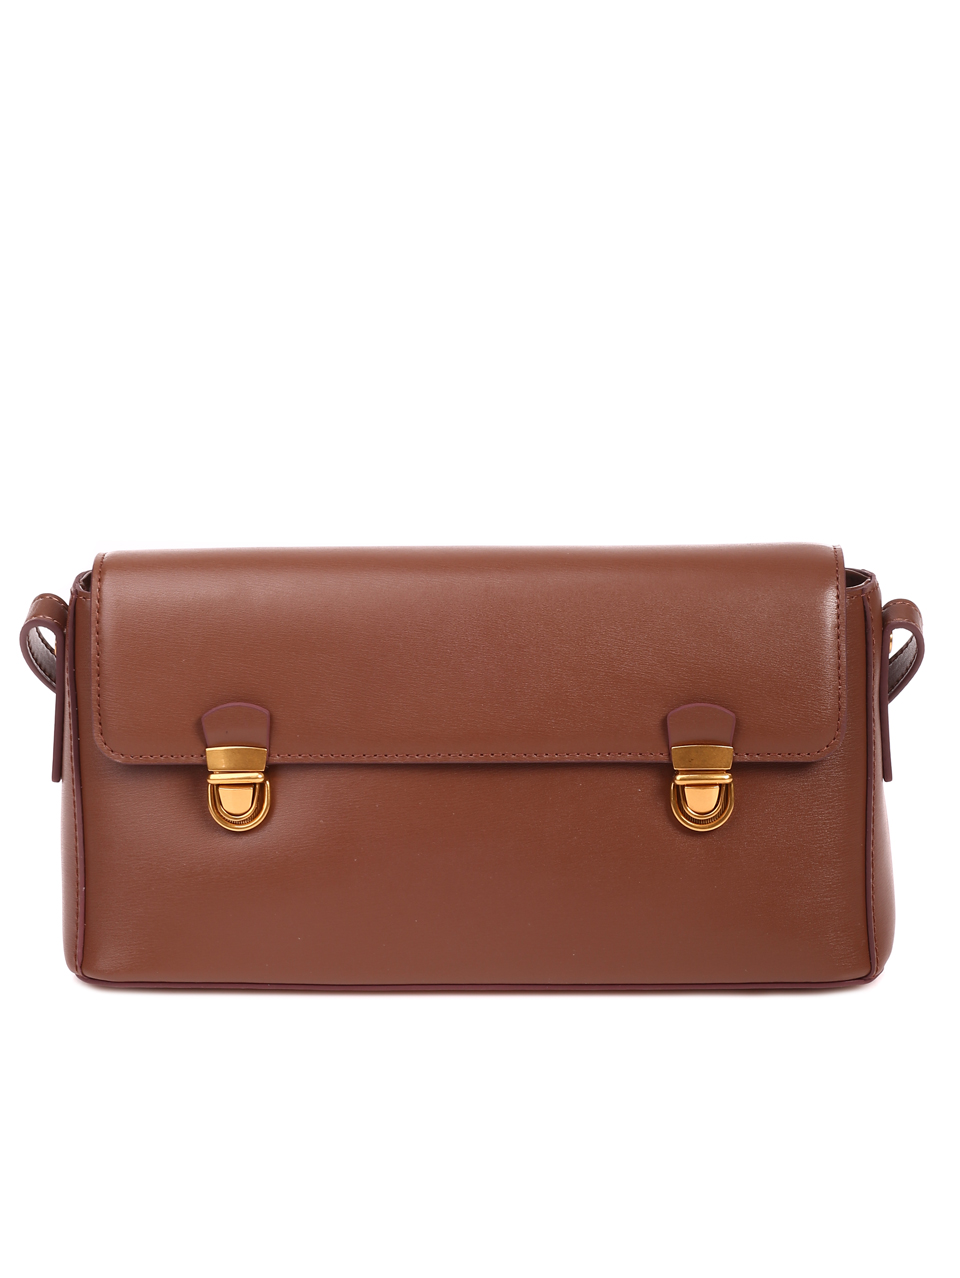 Ежедневна дамска чанта в кафяво от естествена кожа P20928 brown